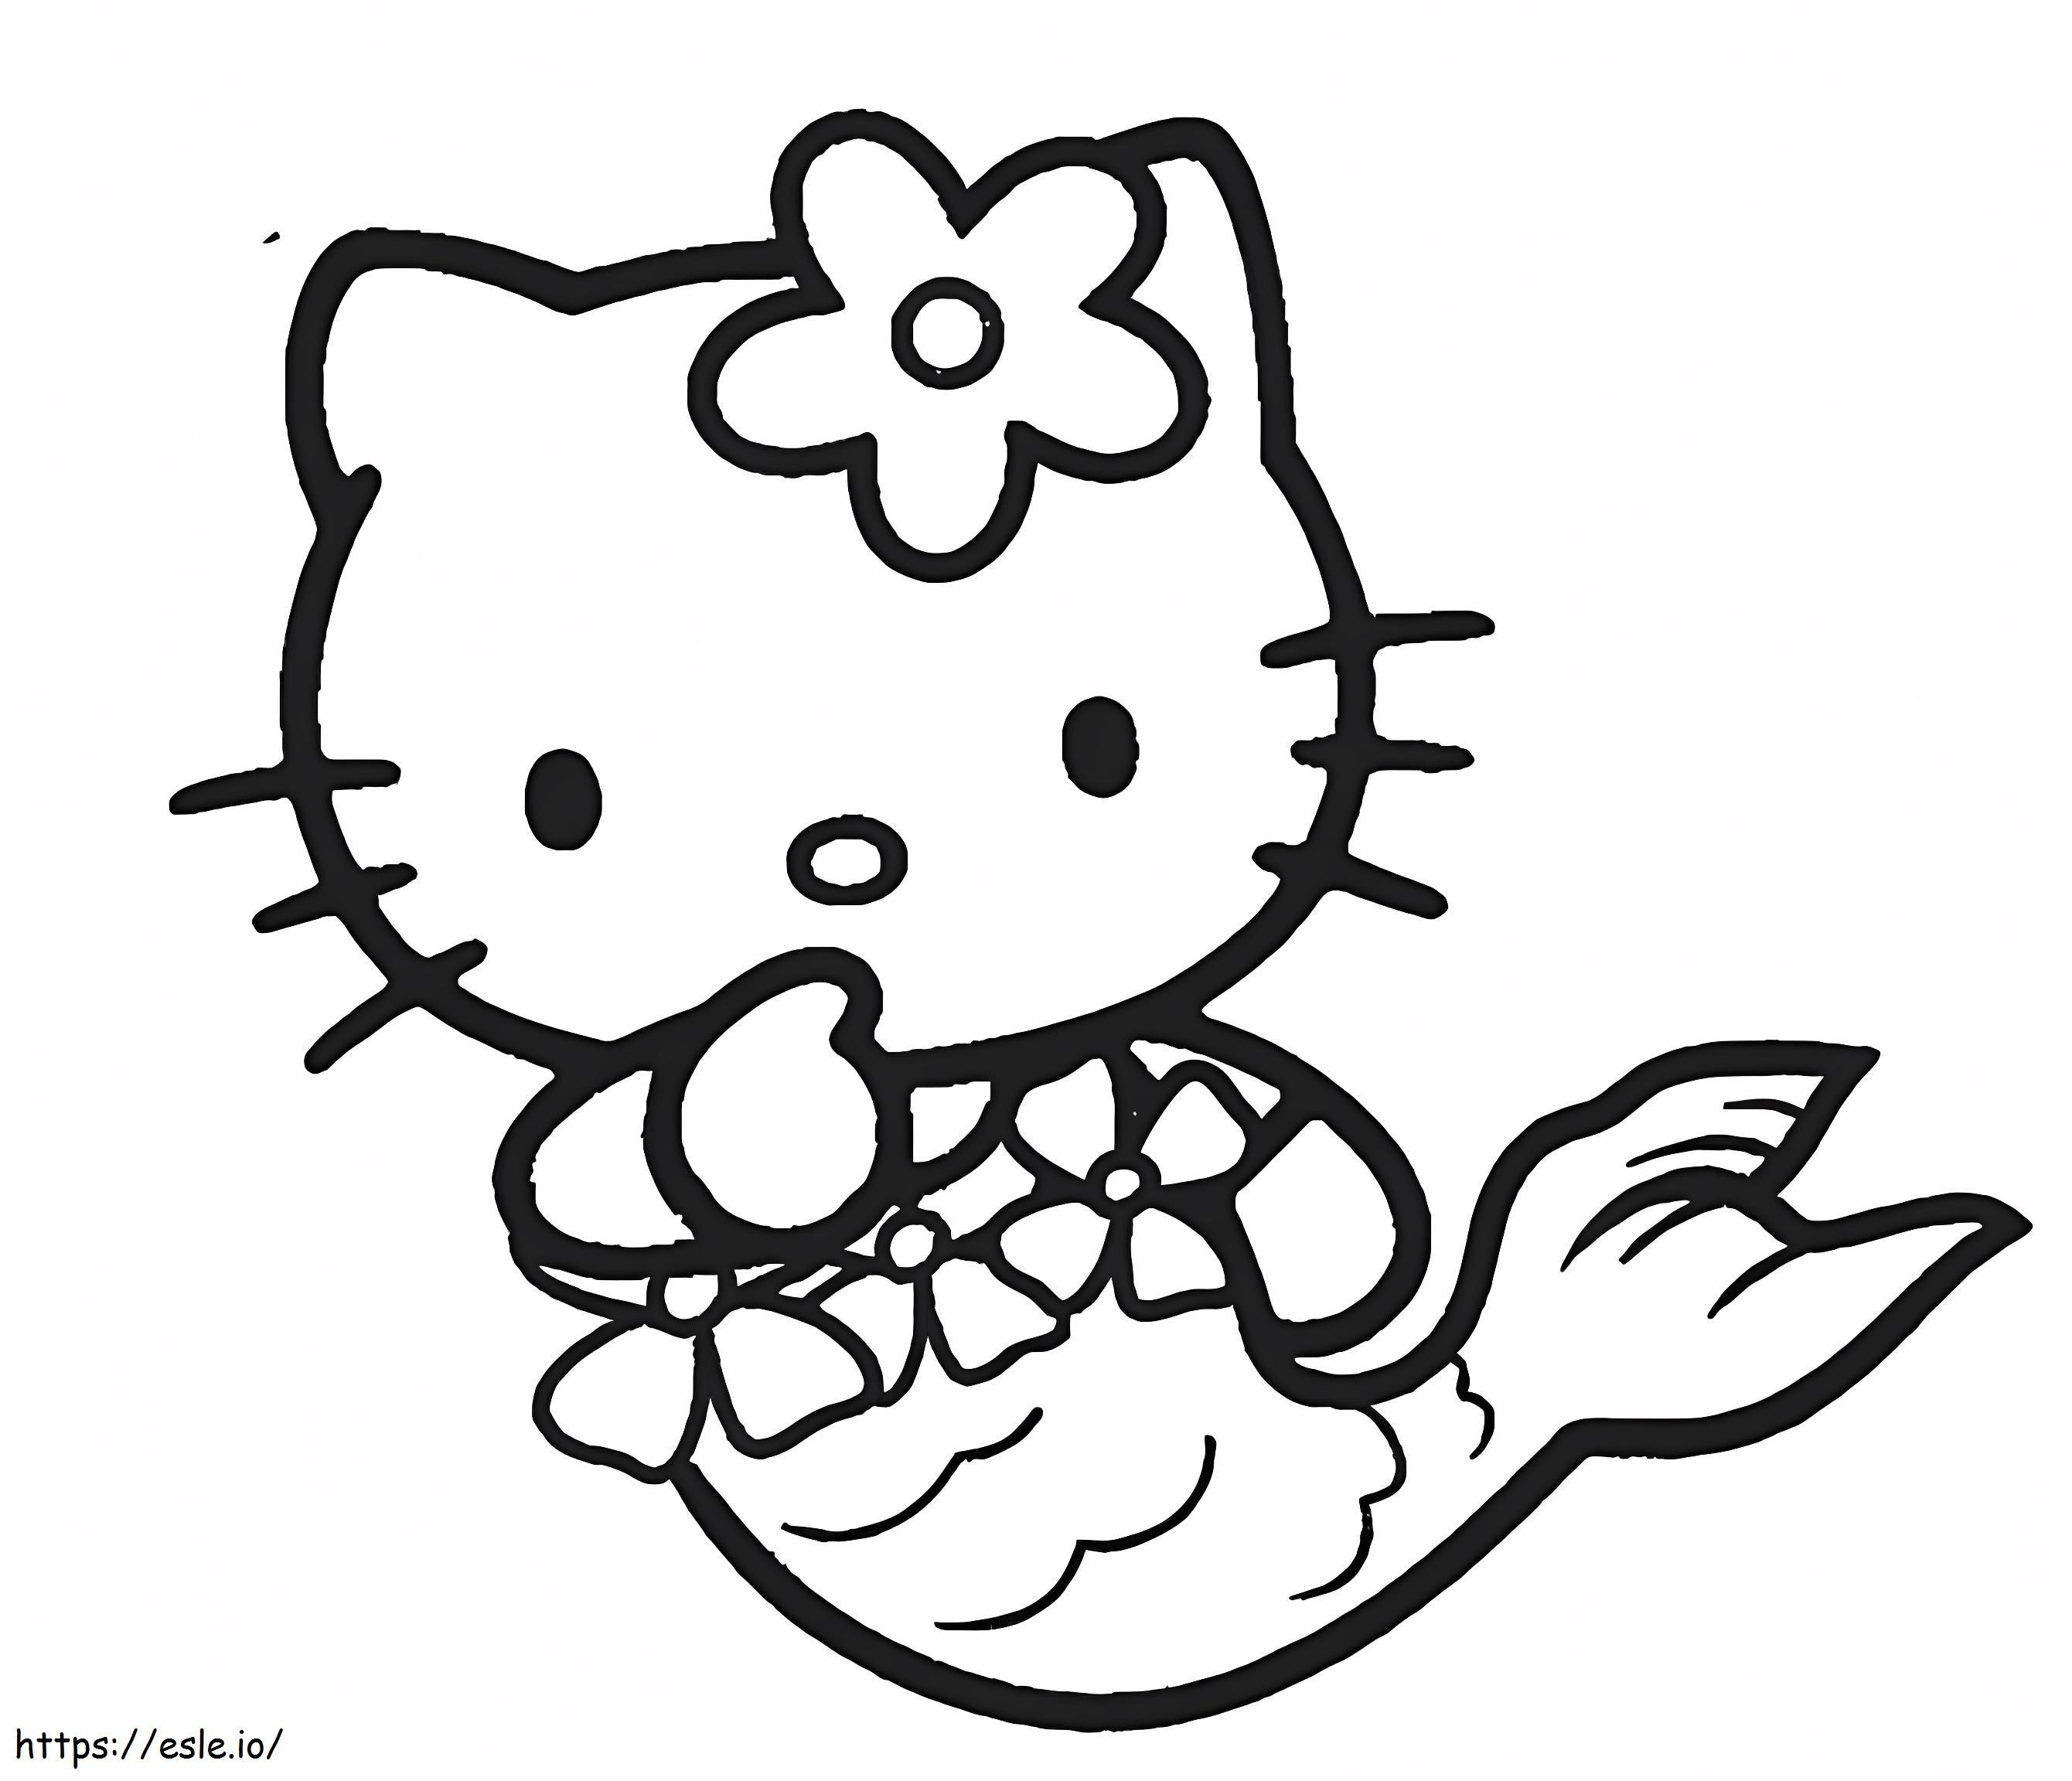 Syrenka Hello Kitty do bezpłatnego wydruku kolorowanka